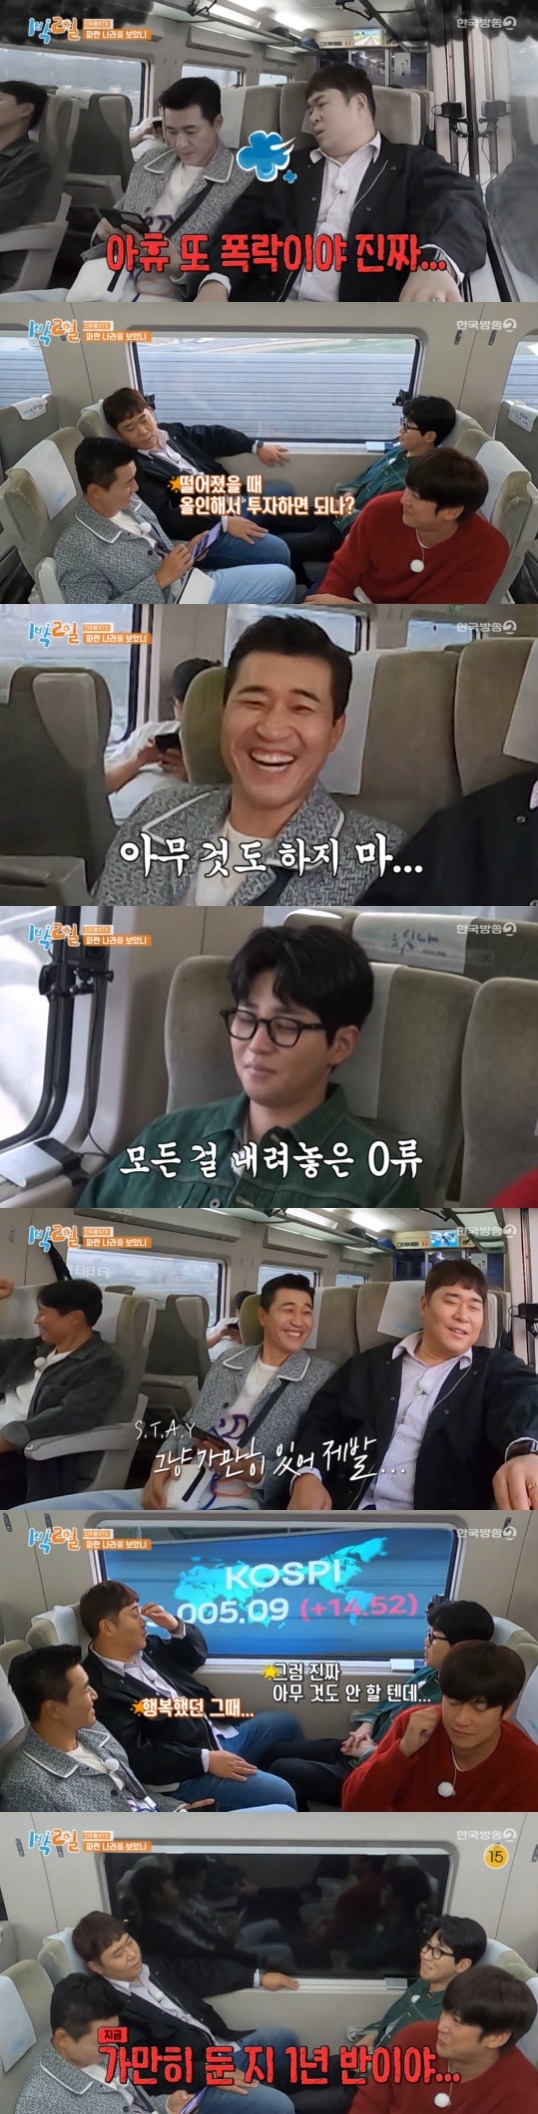 KBS 2TV '1박2일 시즌4' 방송 화면 캡처